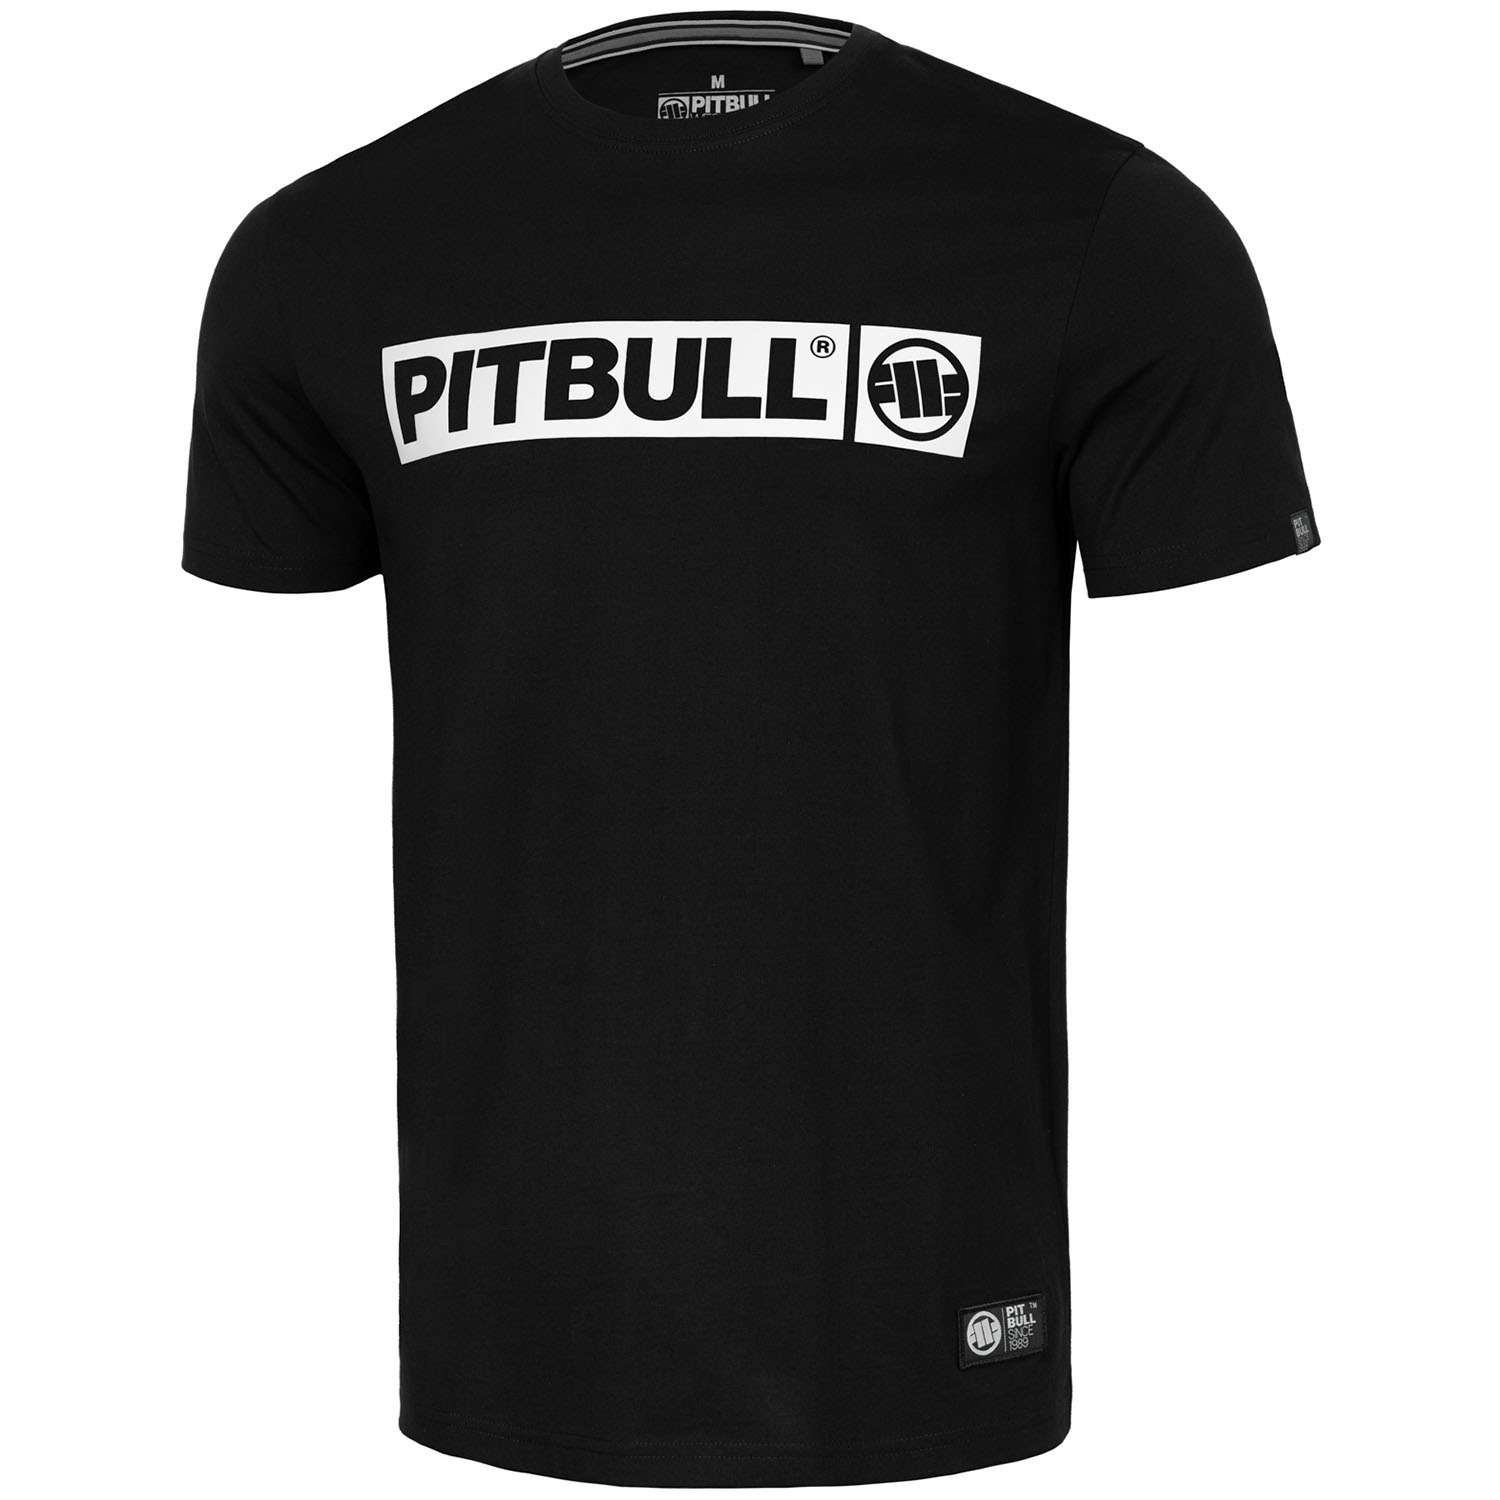 Pit Bull West Coast T-Shirt, Hilltop S70, schwarz